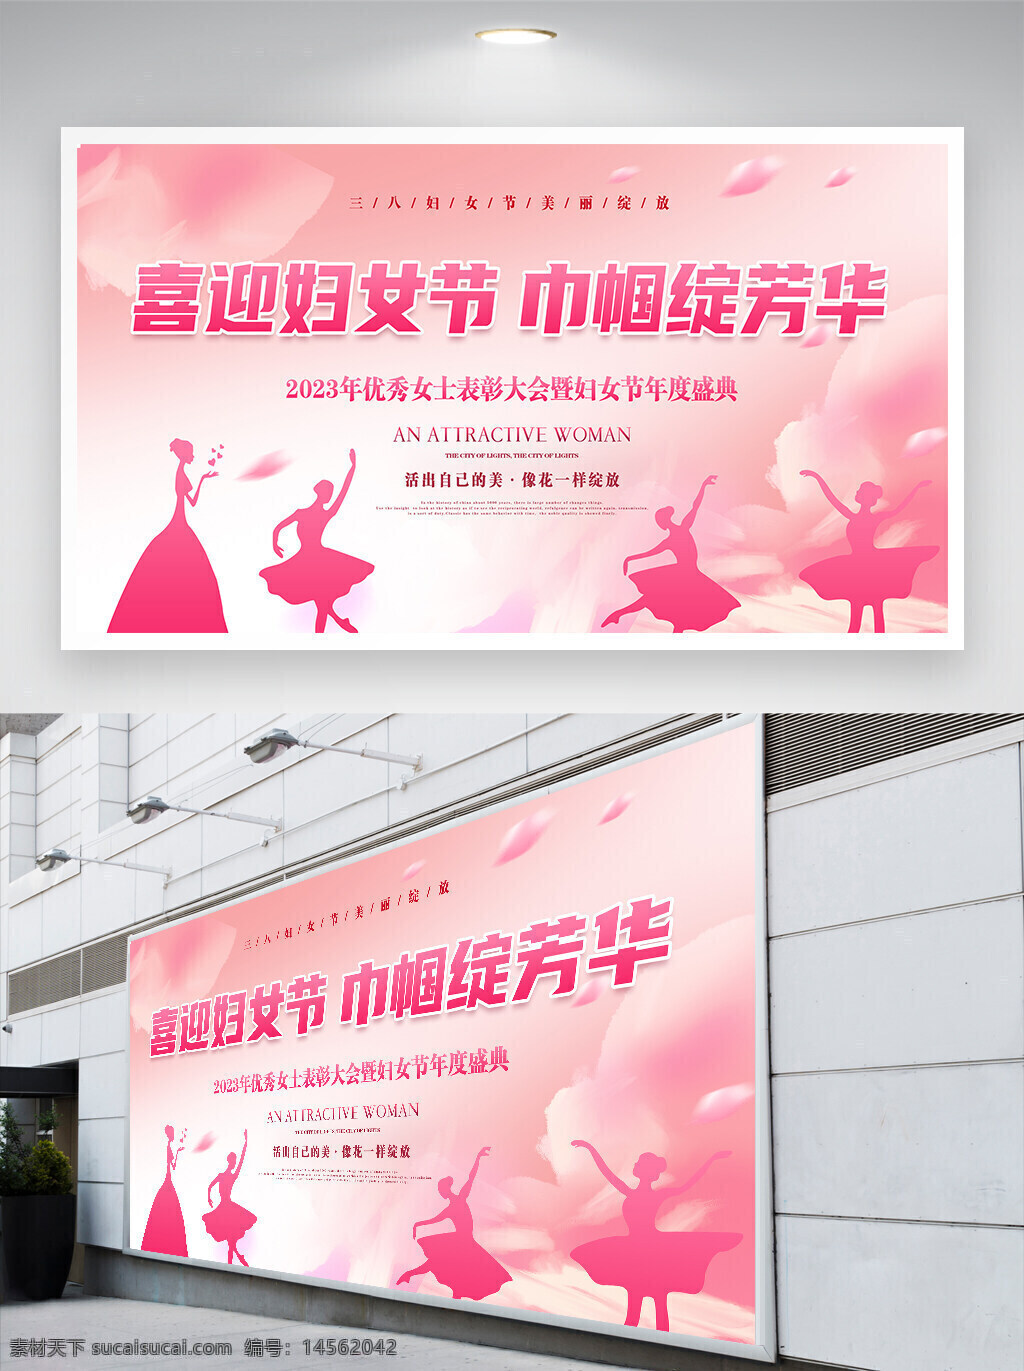 三八妇女节 妇女节 妇女节活动 妇女节宣传 妇女节展板 活动宣传 活动展板 宣传展板 展板